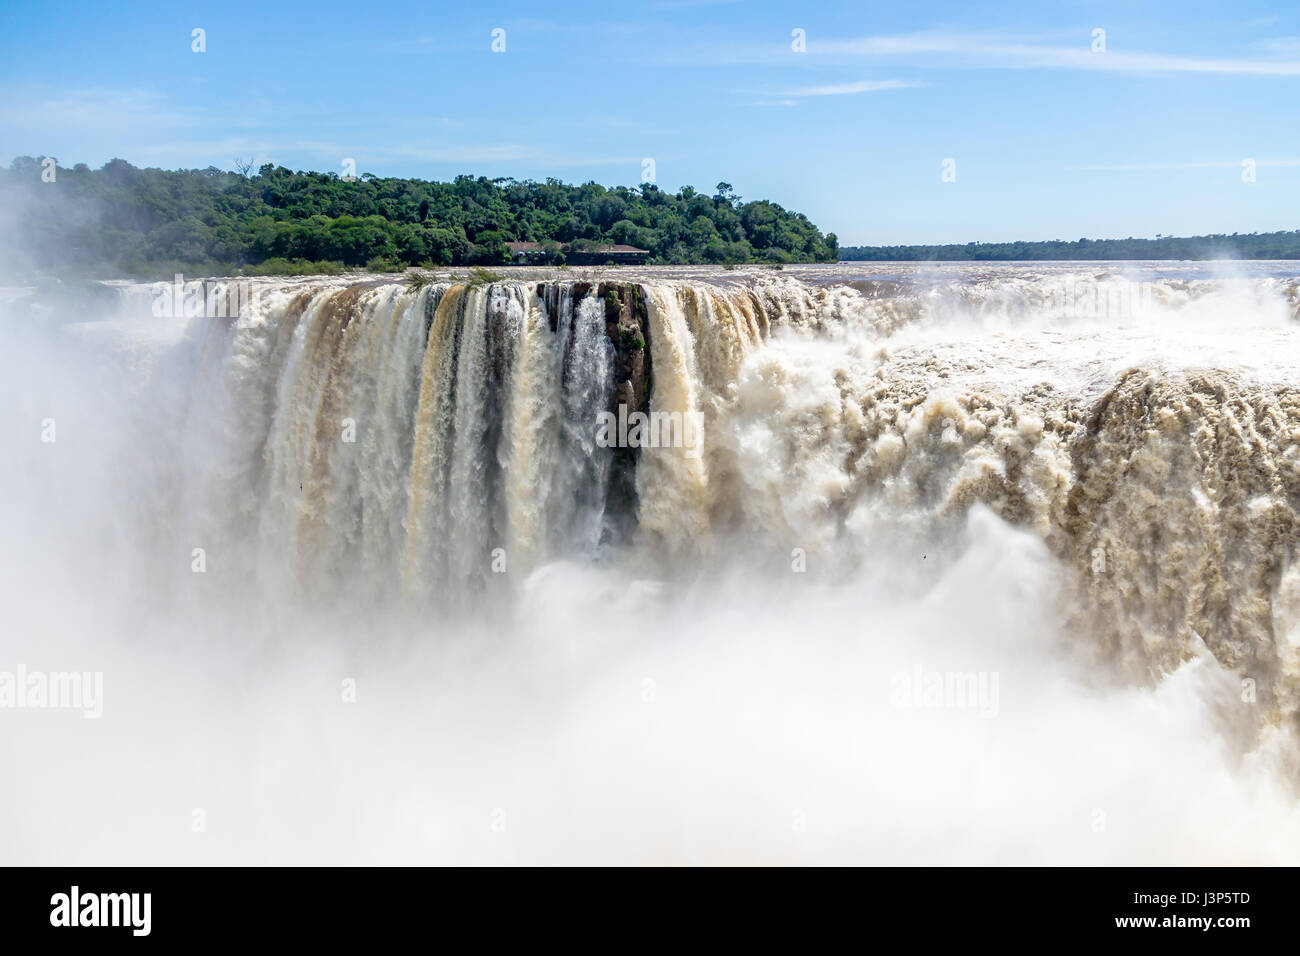 La gola di diavoli a Iguazu Falls vista dal lato Argentino - Brasile e Argentina confine Foto Stock